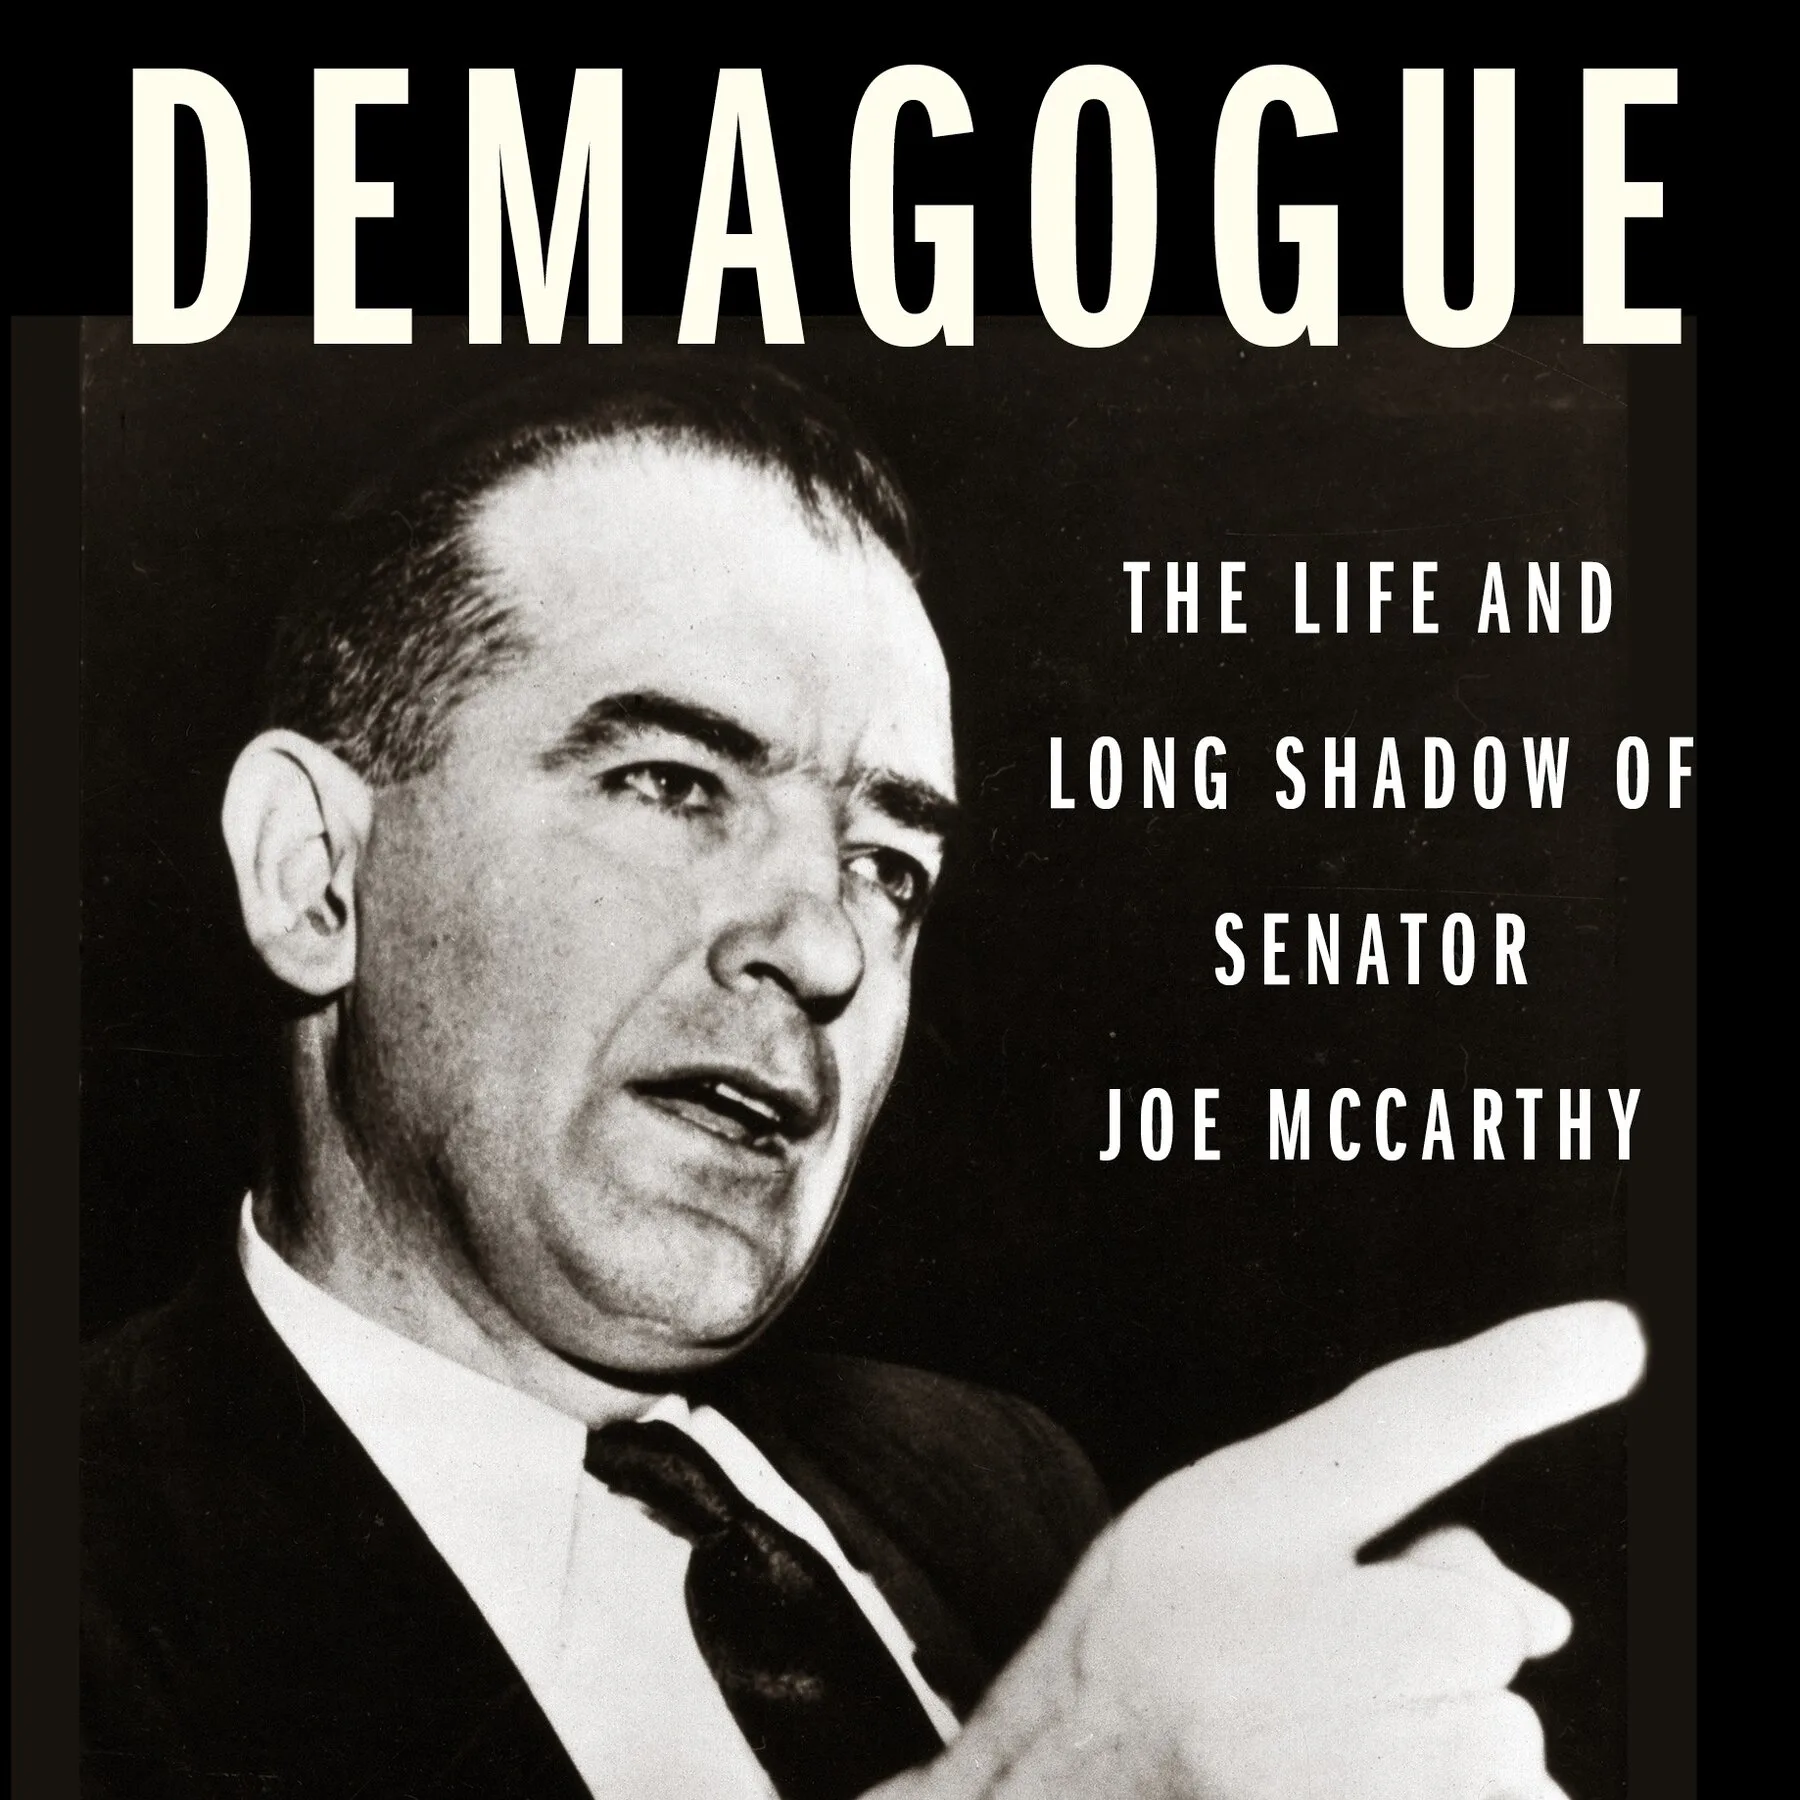 demagogue